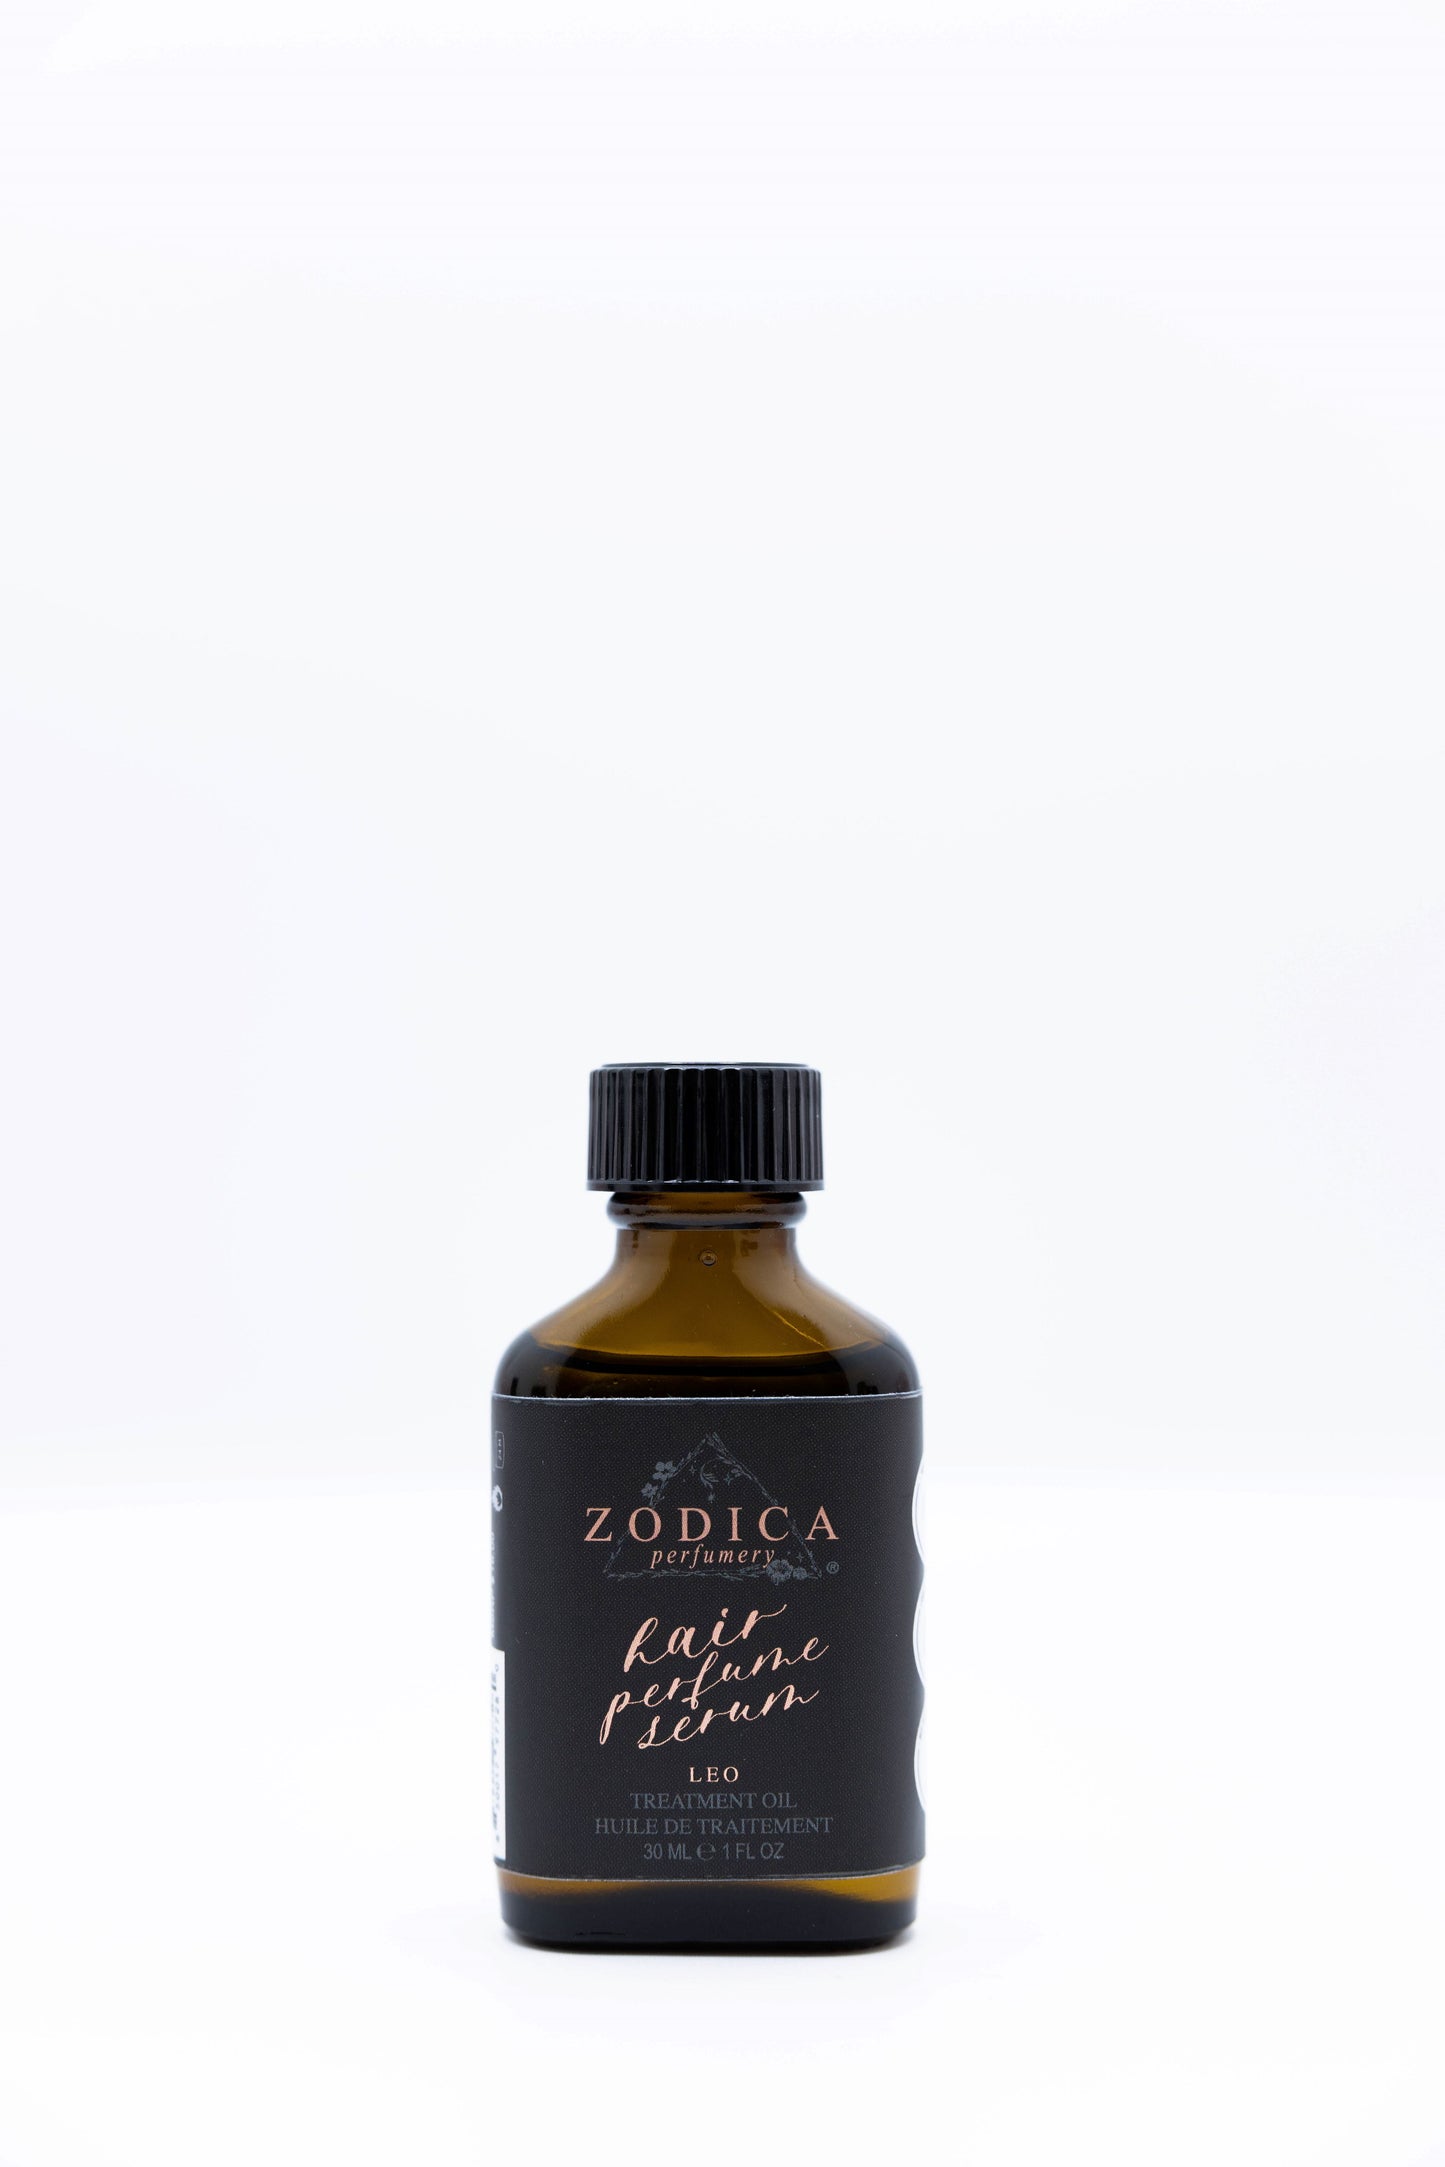 Zodica Hair Oil Leo